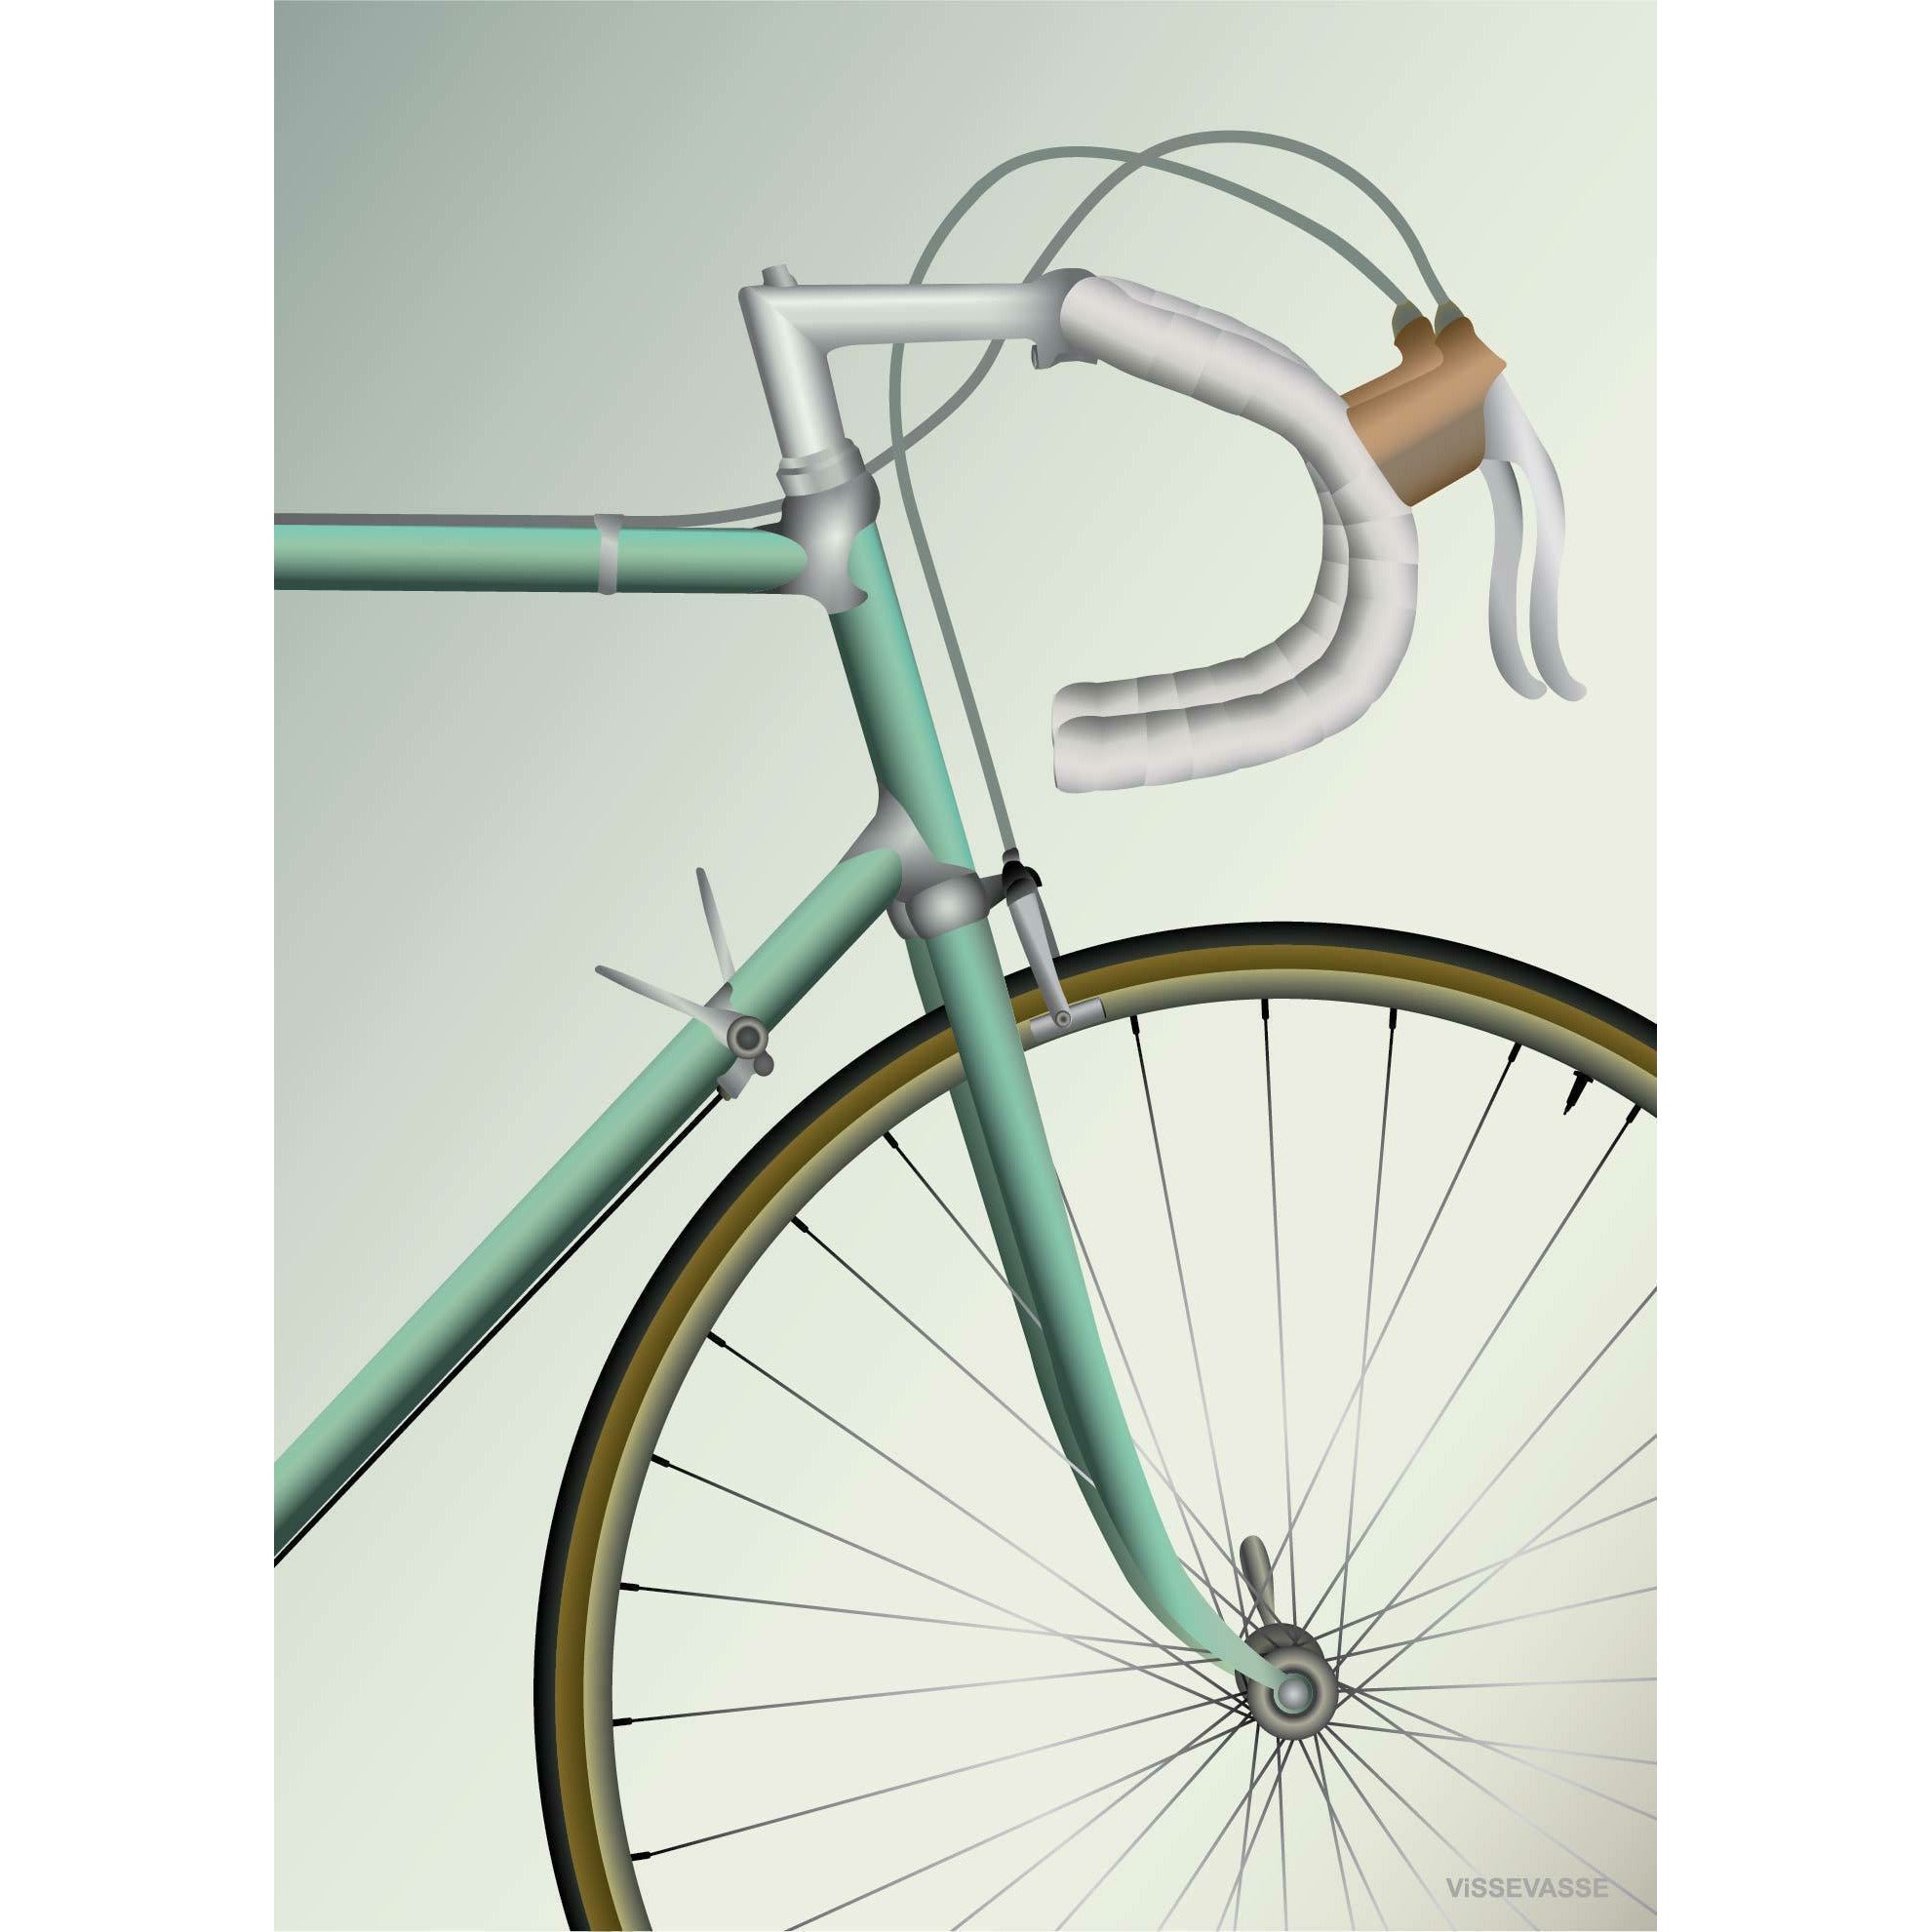 Plakat rowerowy Vissevasse, 70 x 100 cm